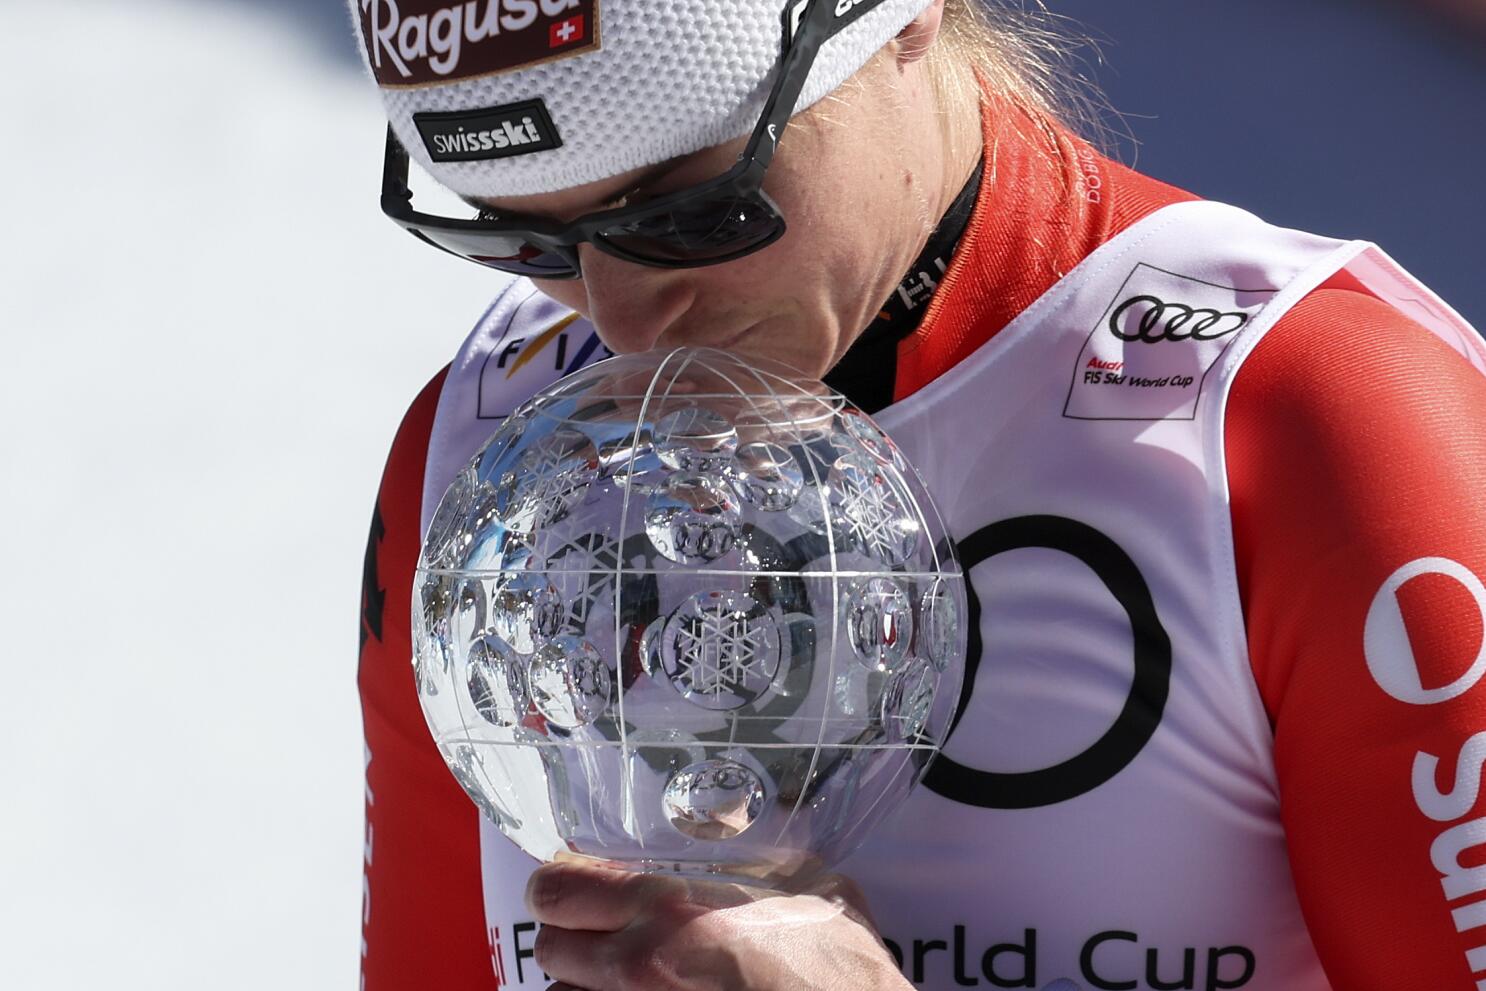 31) Switzerland's Lara Gut-Behrami wins women's super-G, while